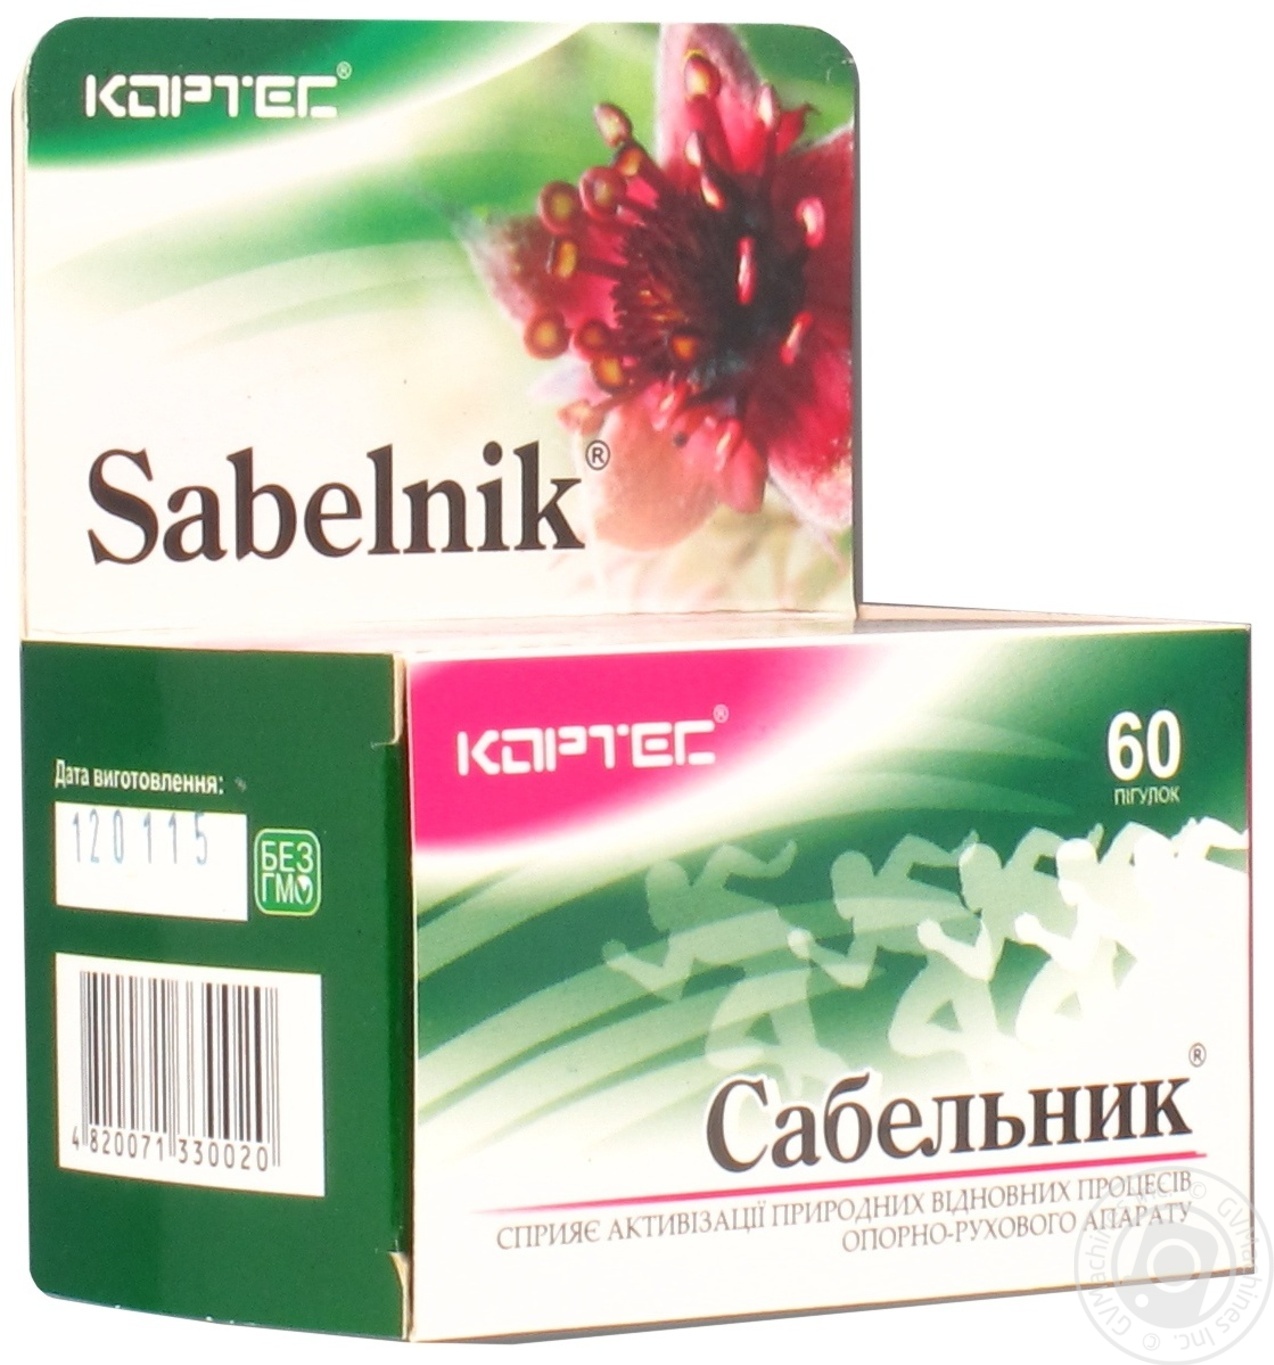 Фитопрепарат в виде растительных таблеток Сабельник производства Кортес Украина